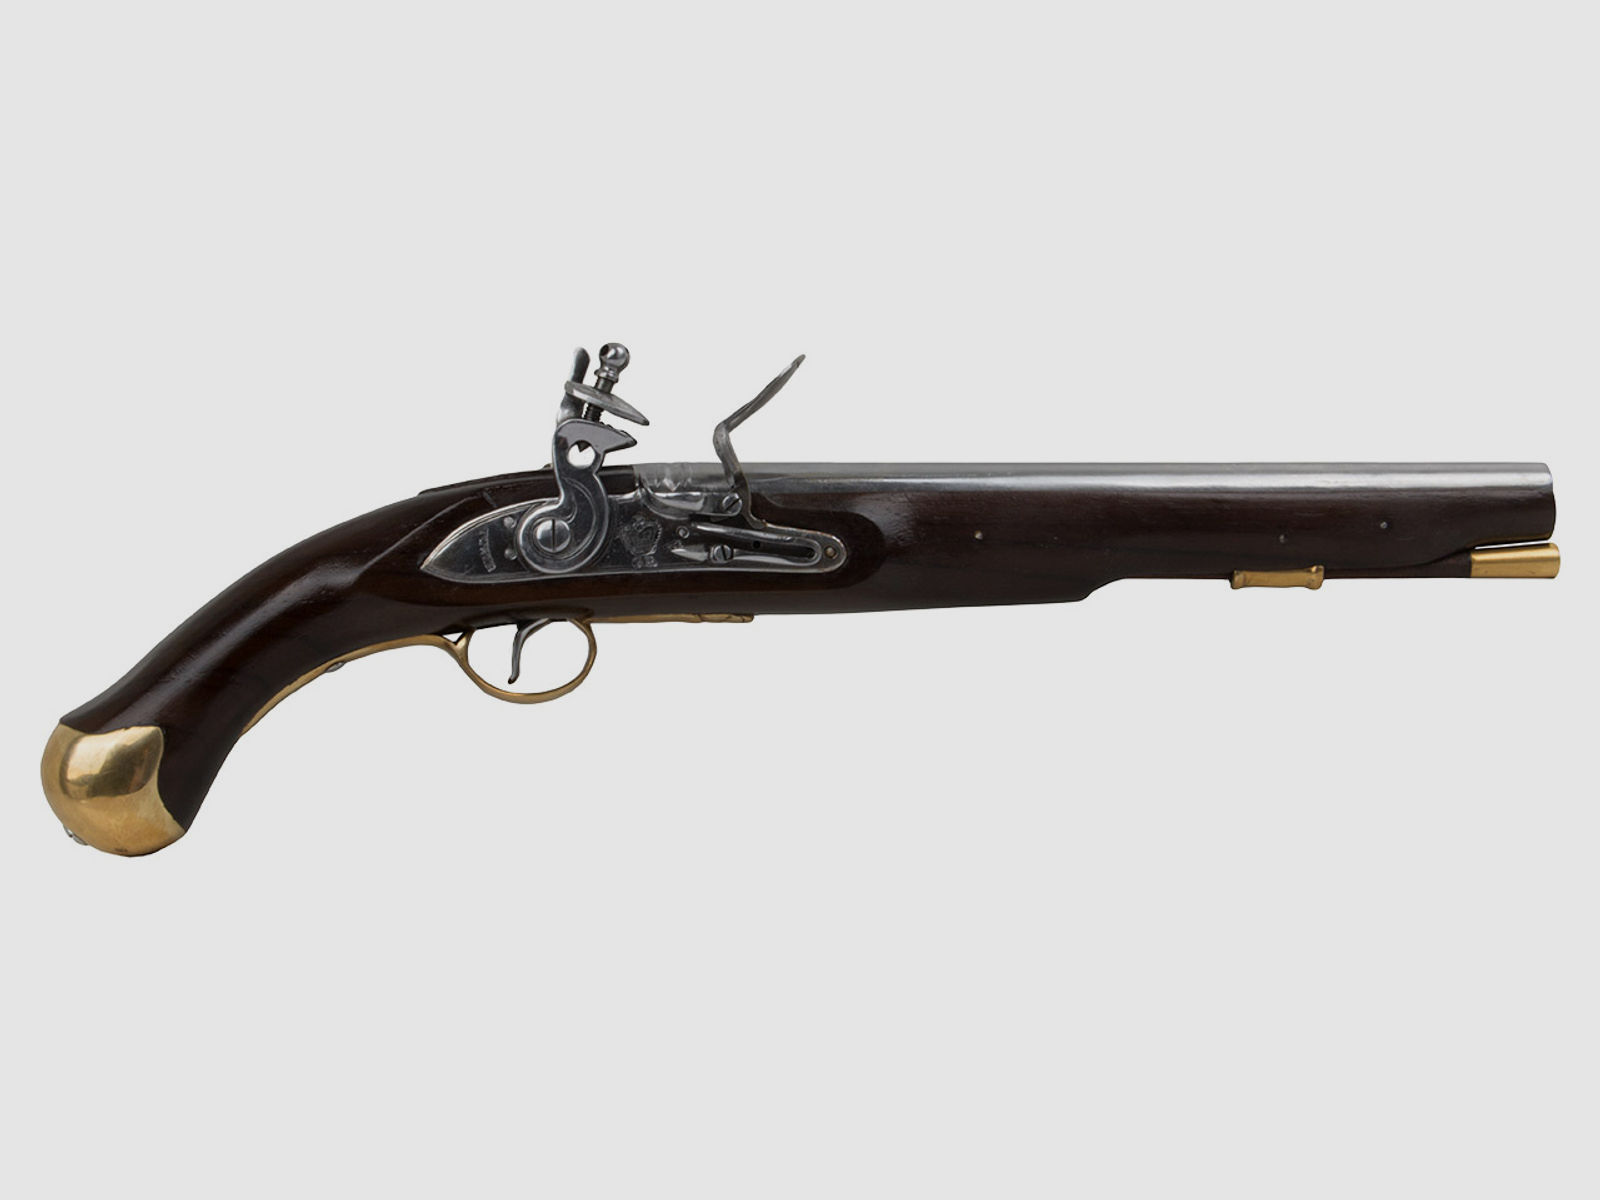 Vorderlader Steinschlosspistole British Royal Navy Sea Service Pistol Pattern 1756 Kaliber .62 bzw. 15,8 mm (P18)